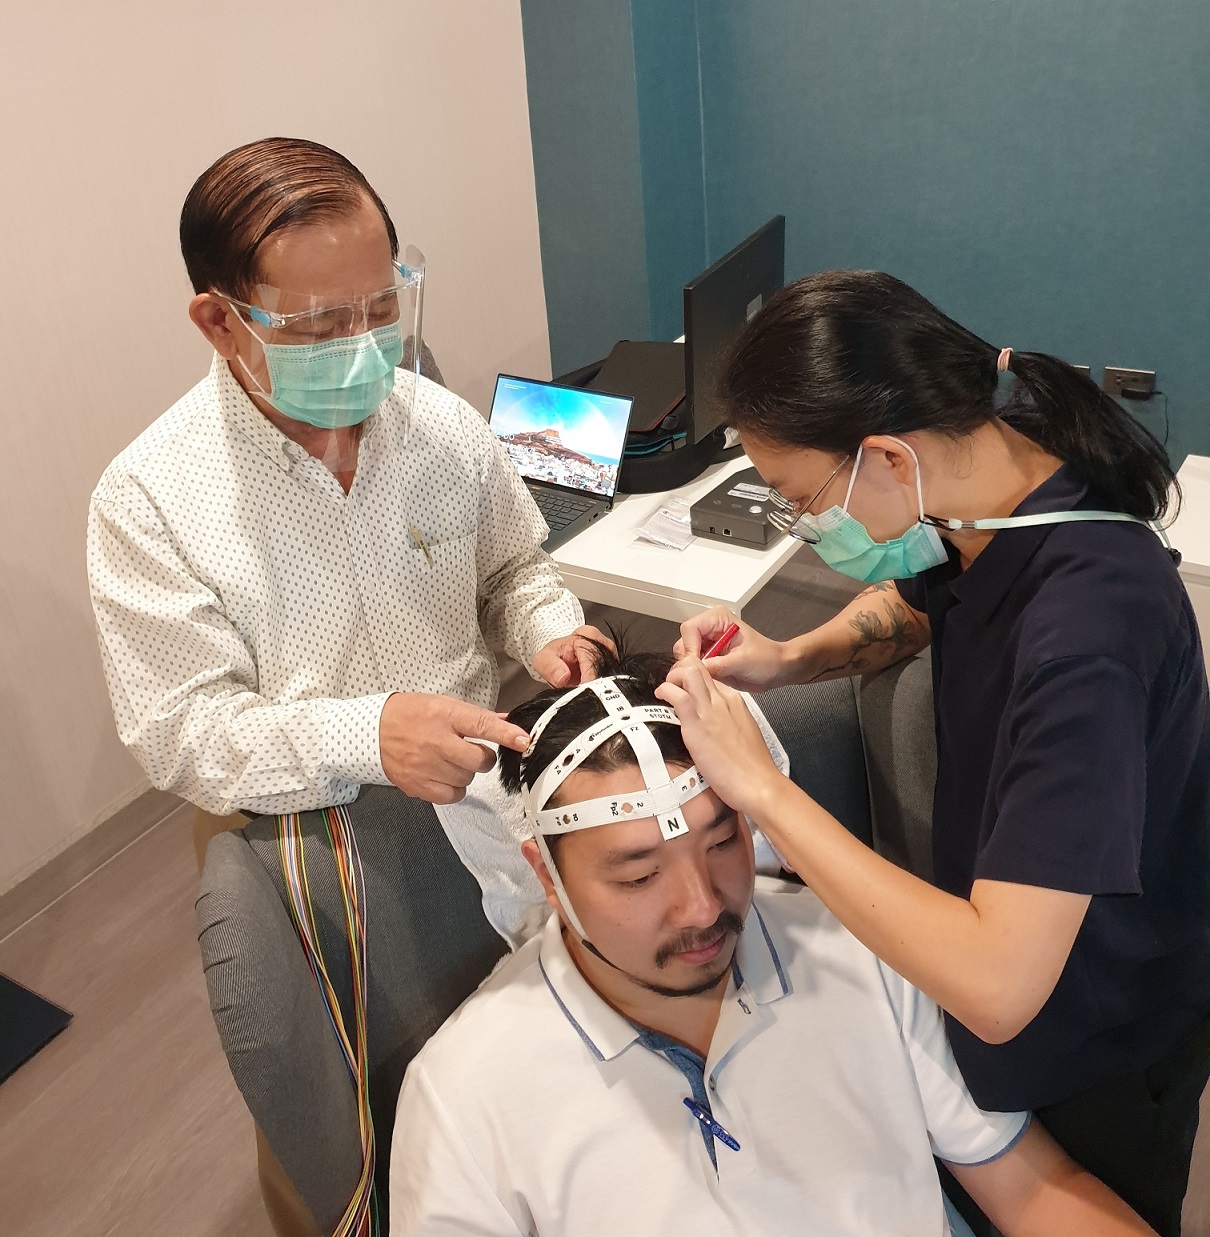 อาจารย์อุบล ปาระมี กำลังติดอุปกรณ์วัดสัญญาณสมองสำหรับตรวจการนอน ศูนย์ชีวานิทราเวช